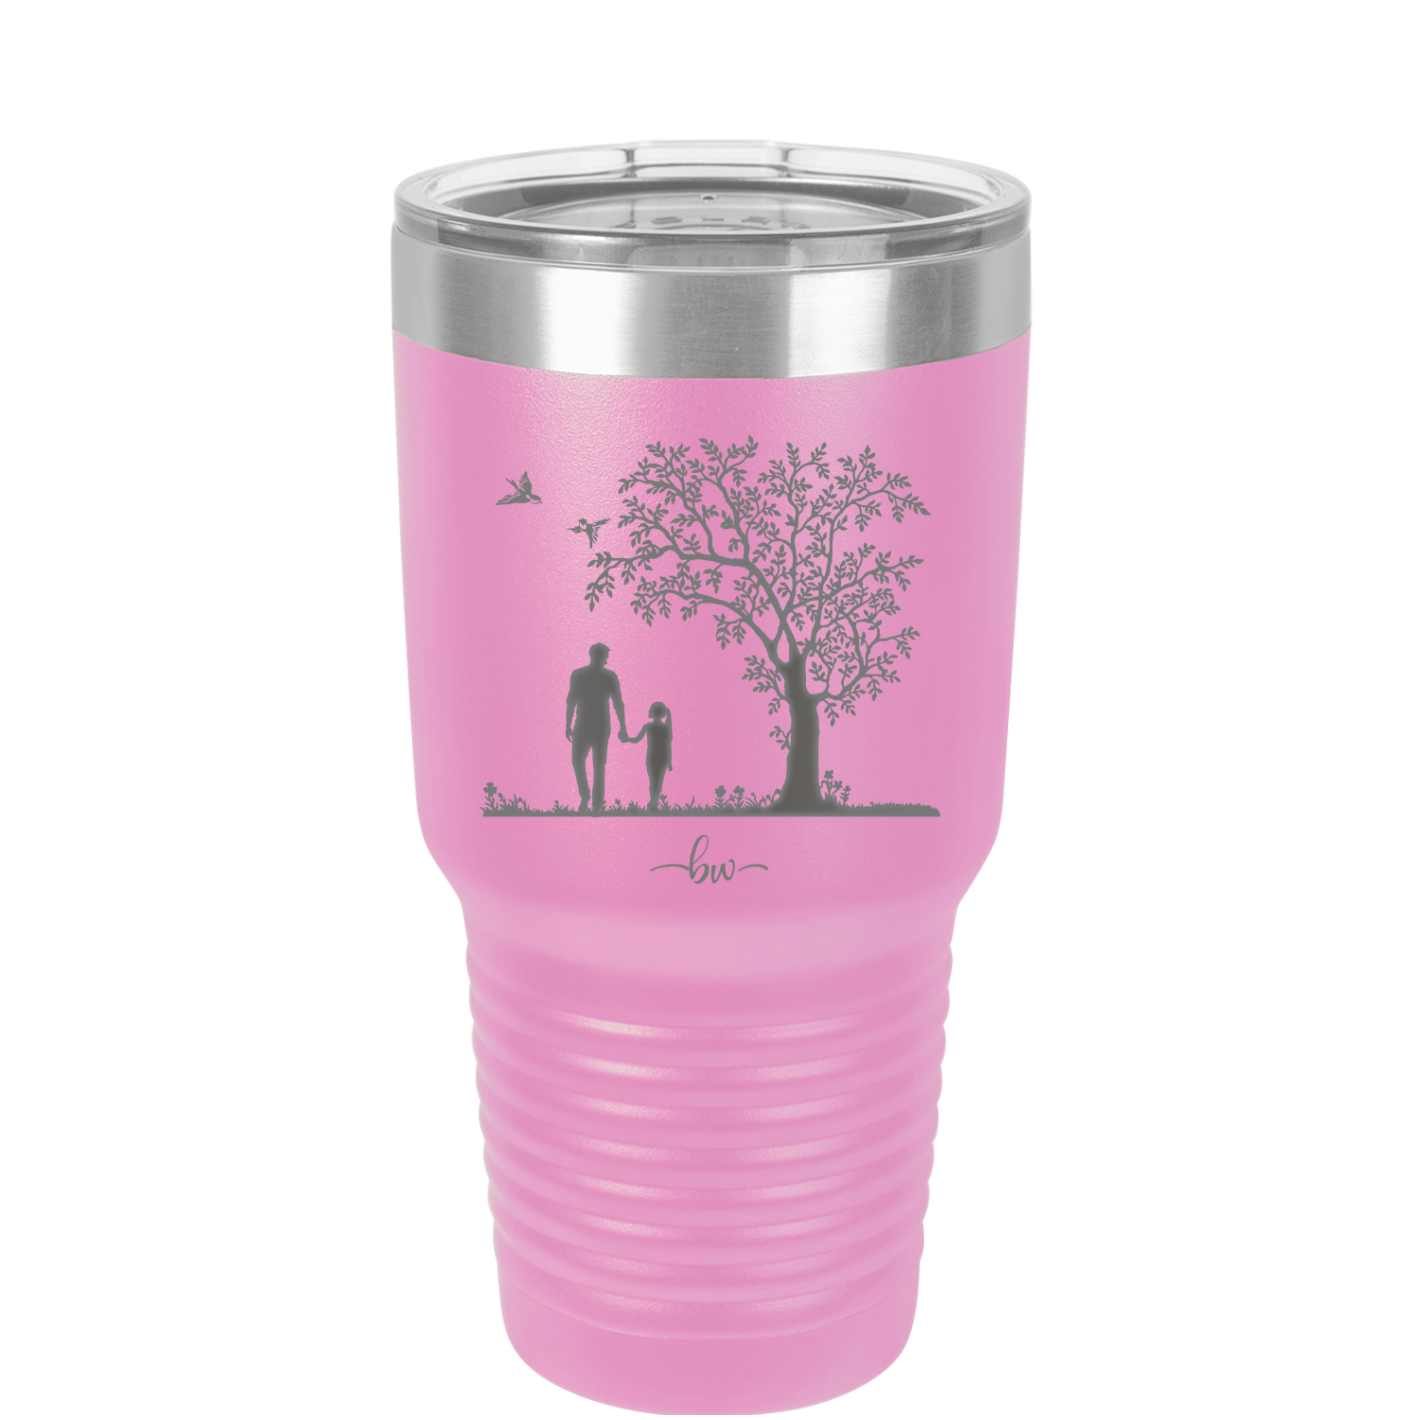 Dad Daughter Tree - Laser Engraved Stainless Steel Drinkware - 2028 -